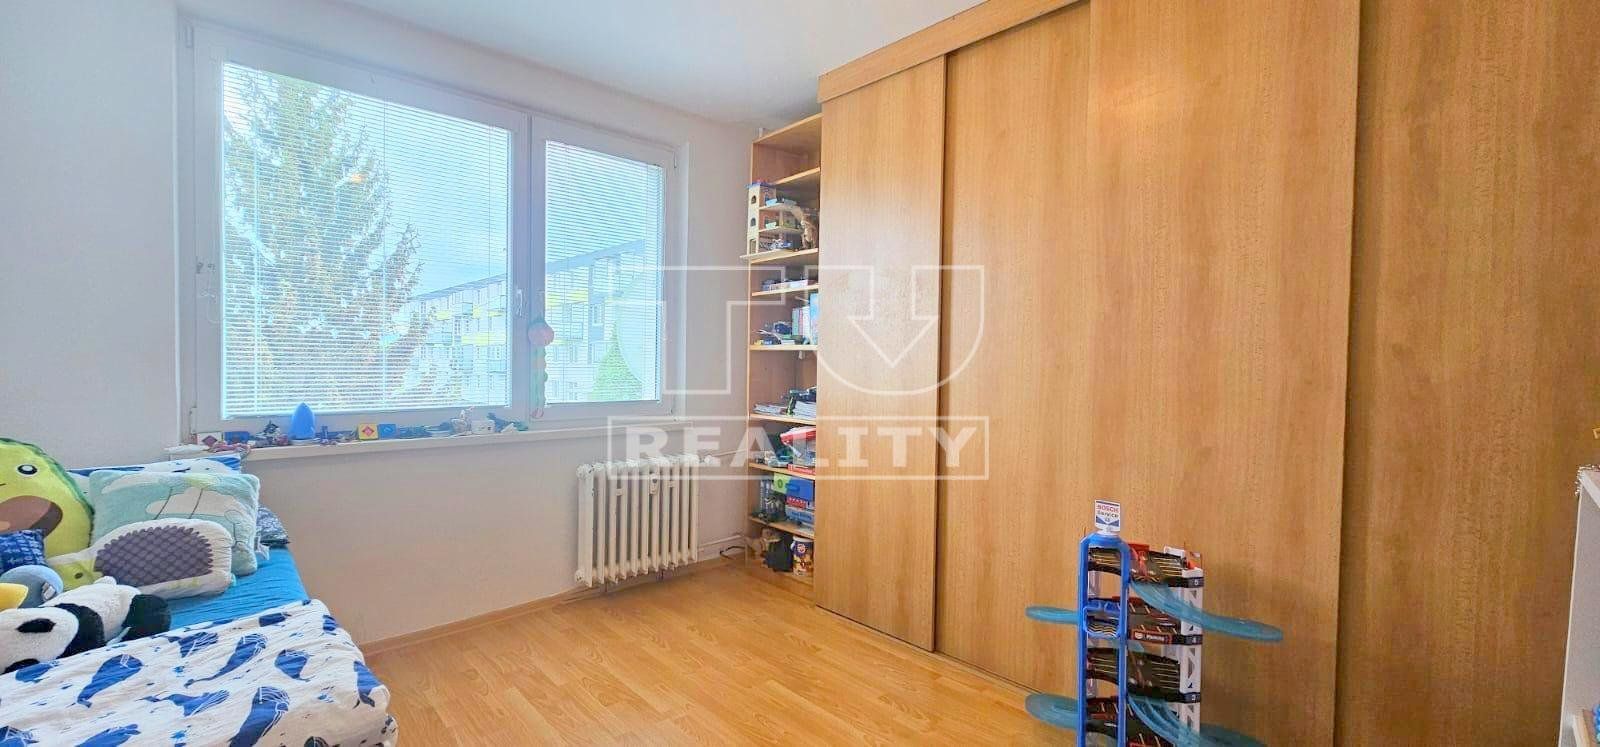 Na predaj 2,5 - izbový byt v obci Chynorany, Školská ulica 57 m2